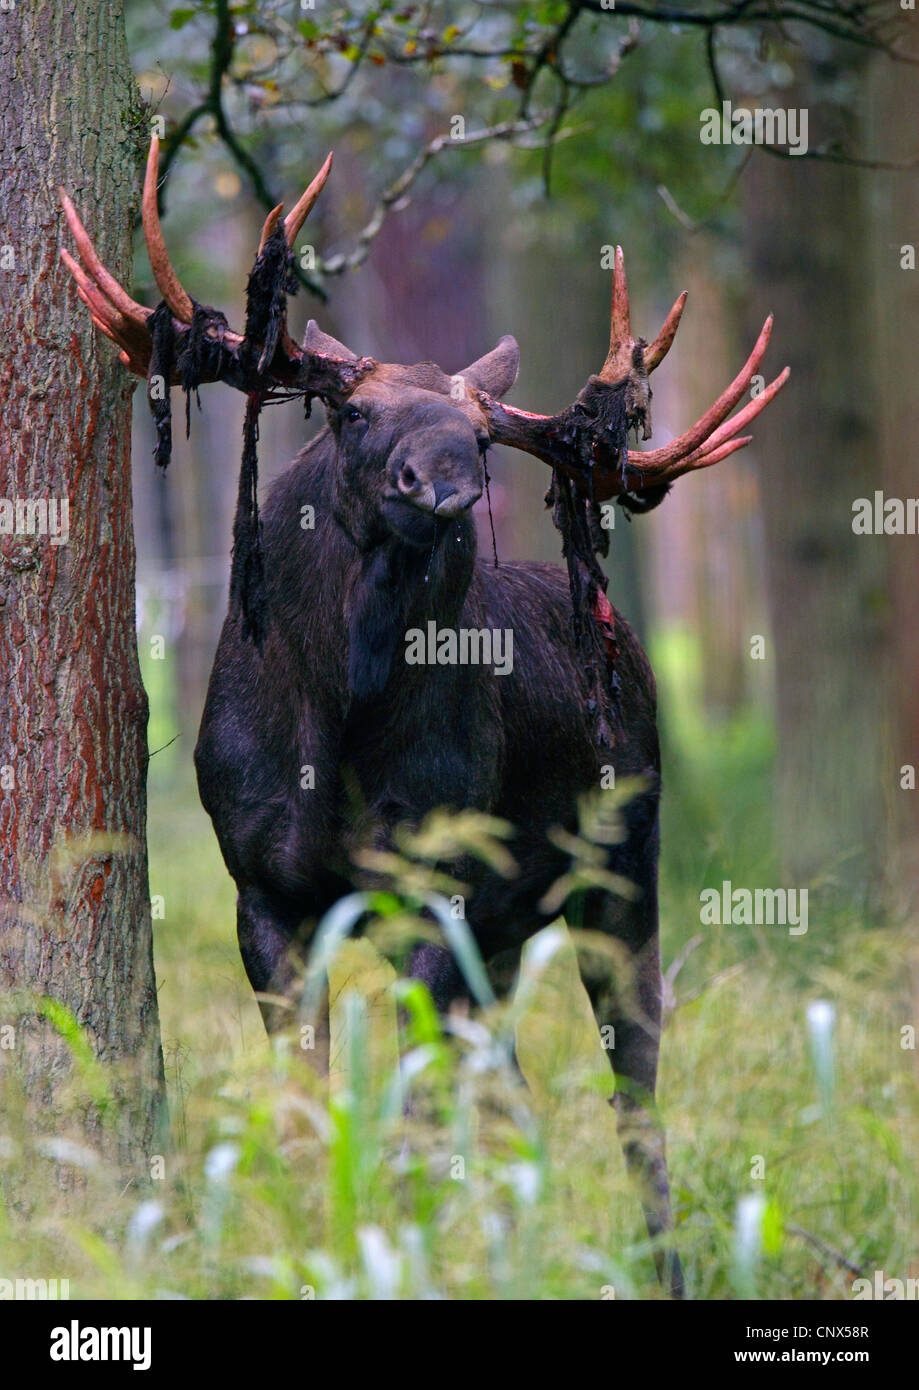 Elk, moose europeo (Alces alces alces), Bull con piezas de bast en la cornamenta después frotando apagado el terciopelo, Alemania Foto de stock